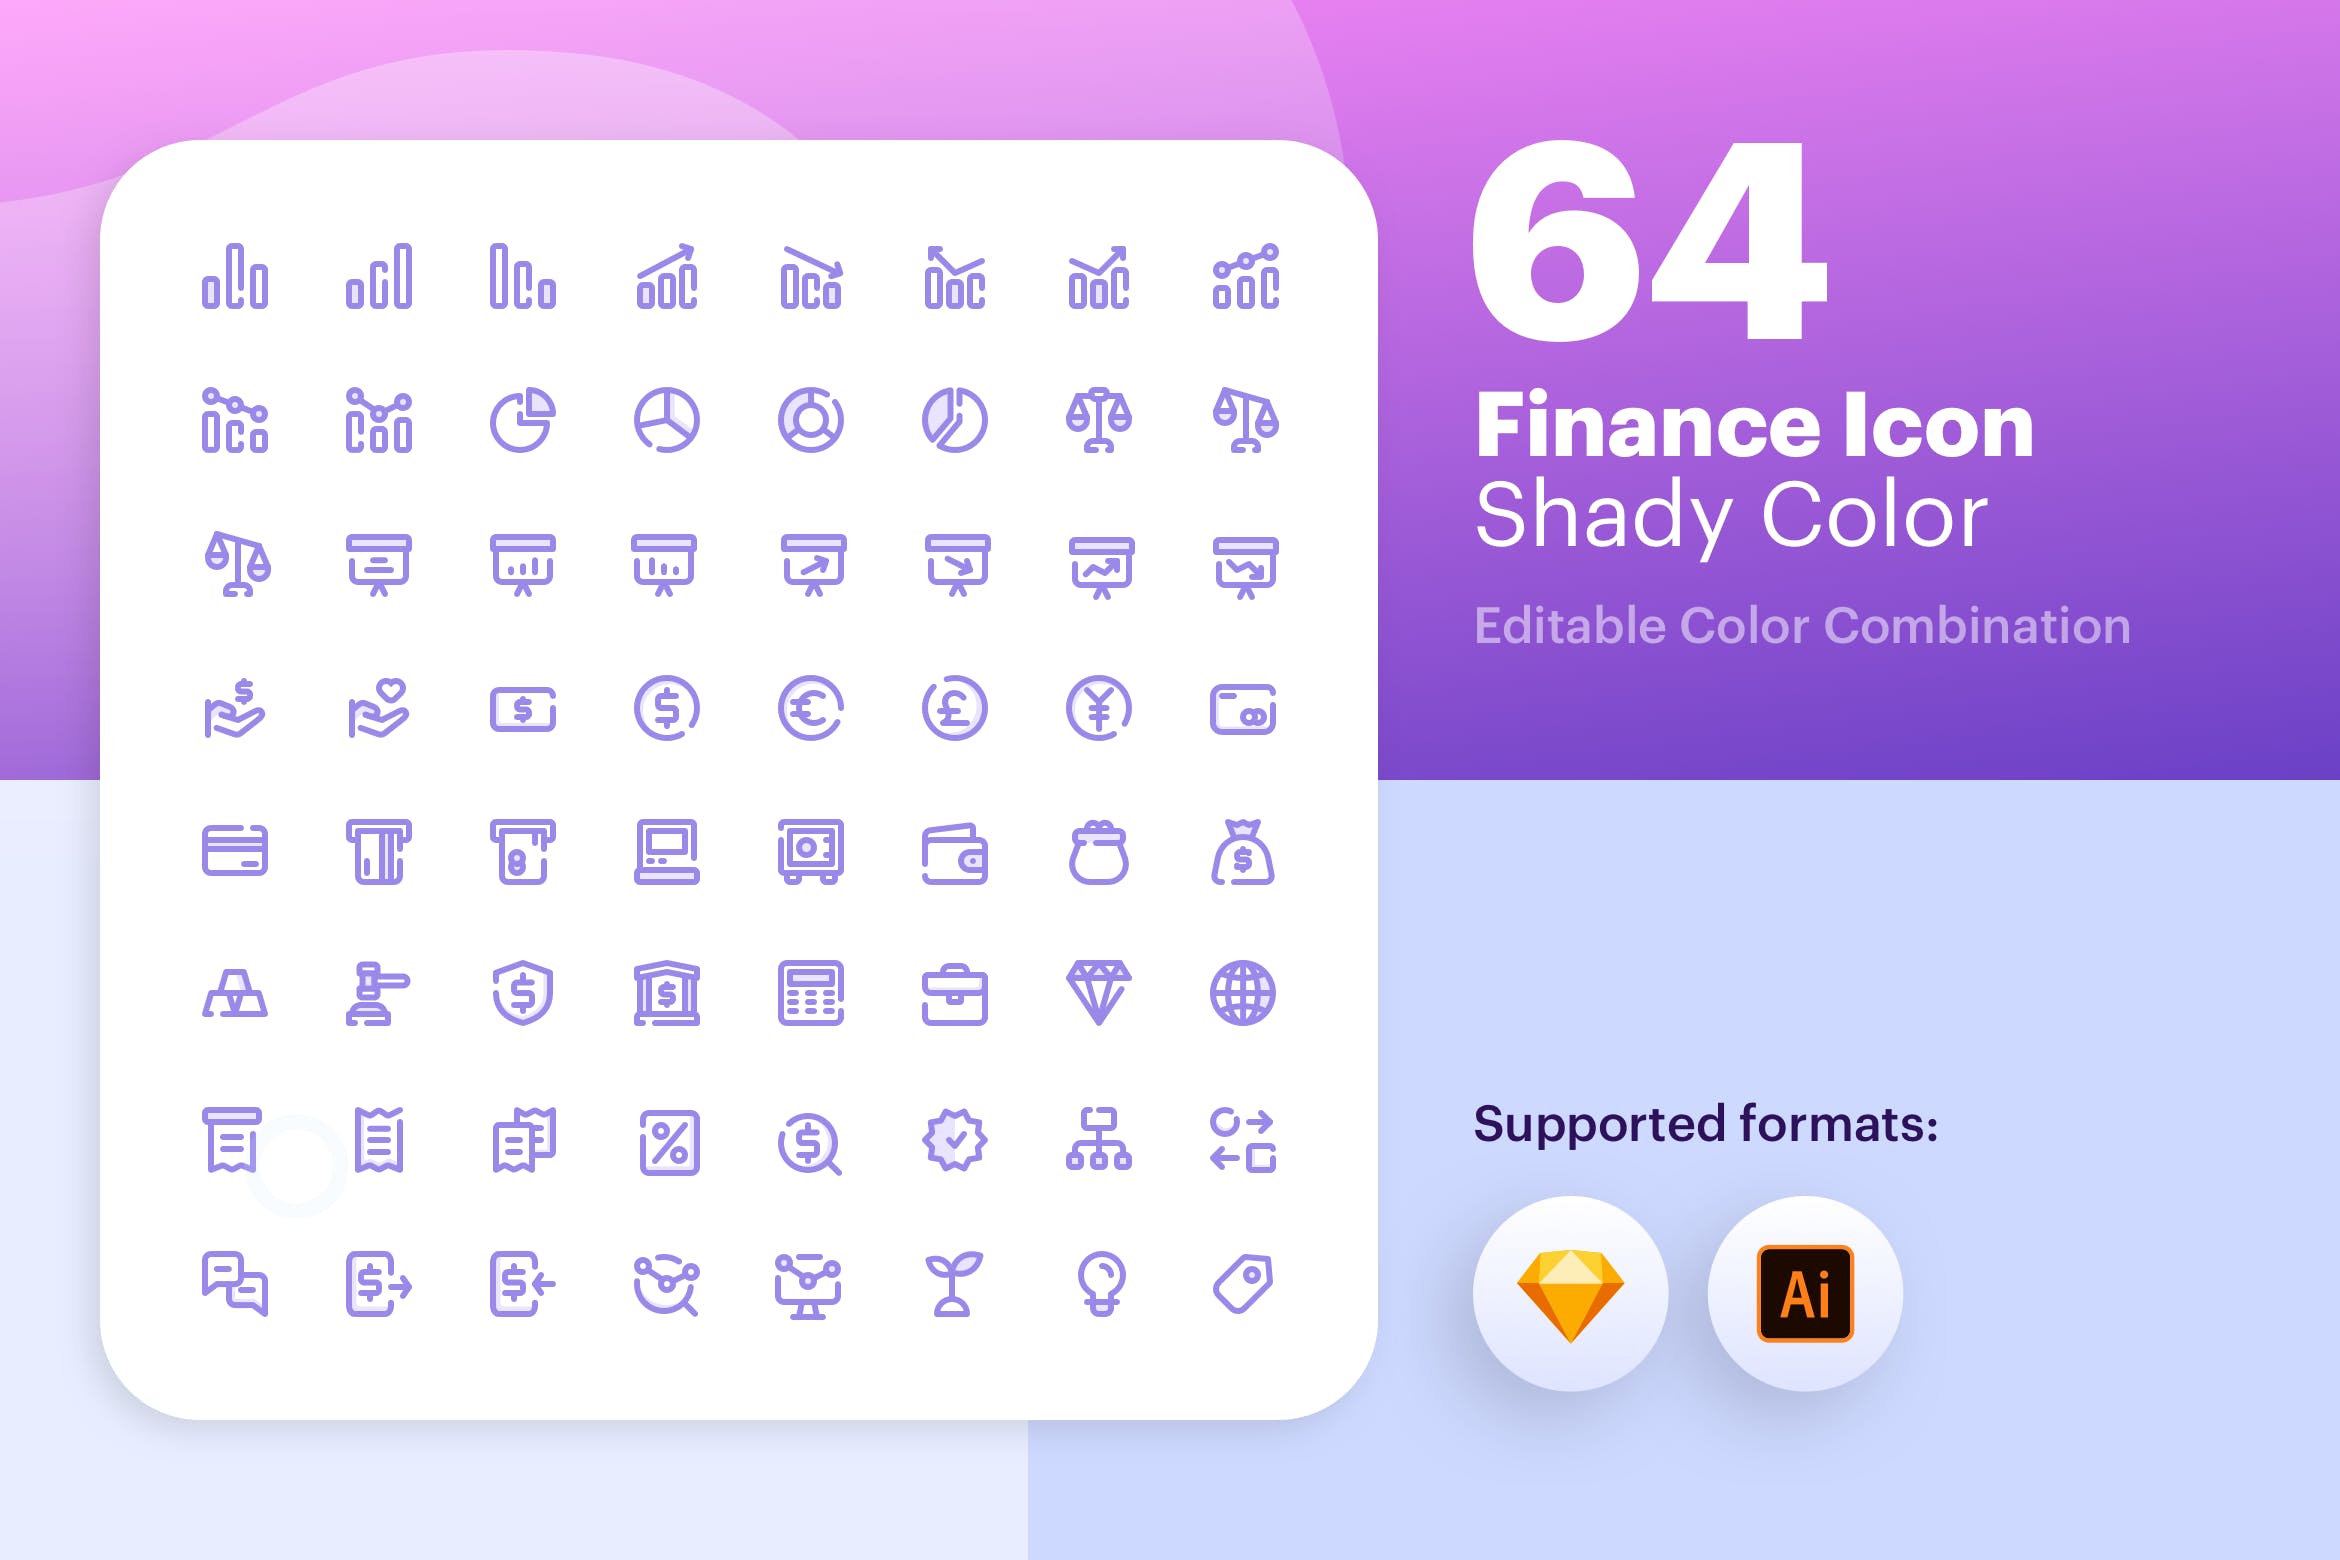 64枚互联网金融彩色阴影蚂蚁素材精选图标素材包 Finance Icon – Shady Color插图